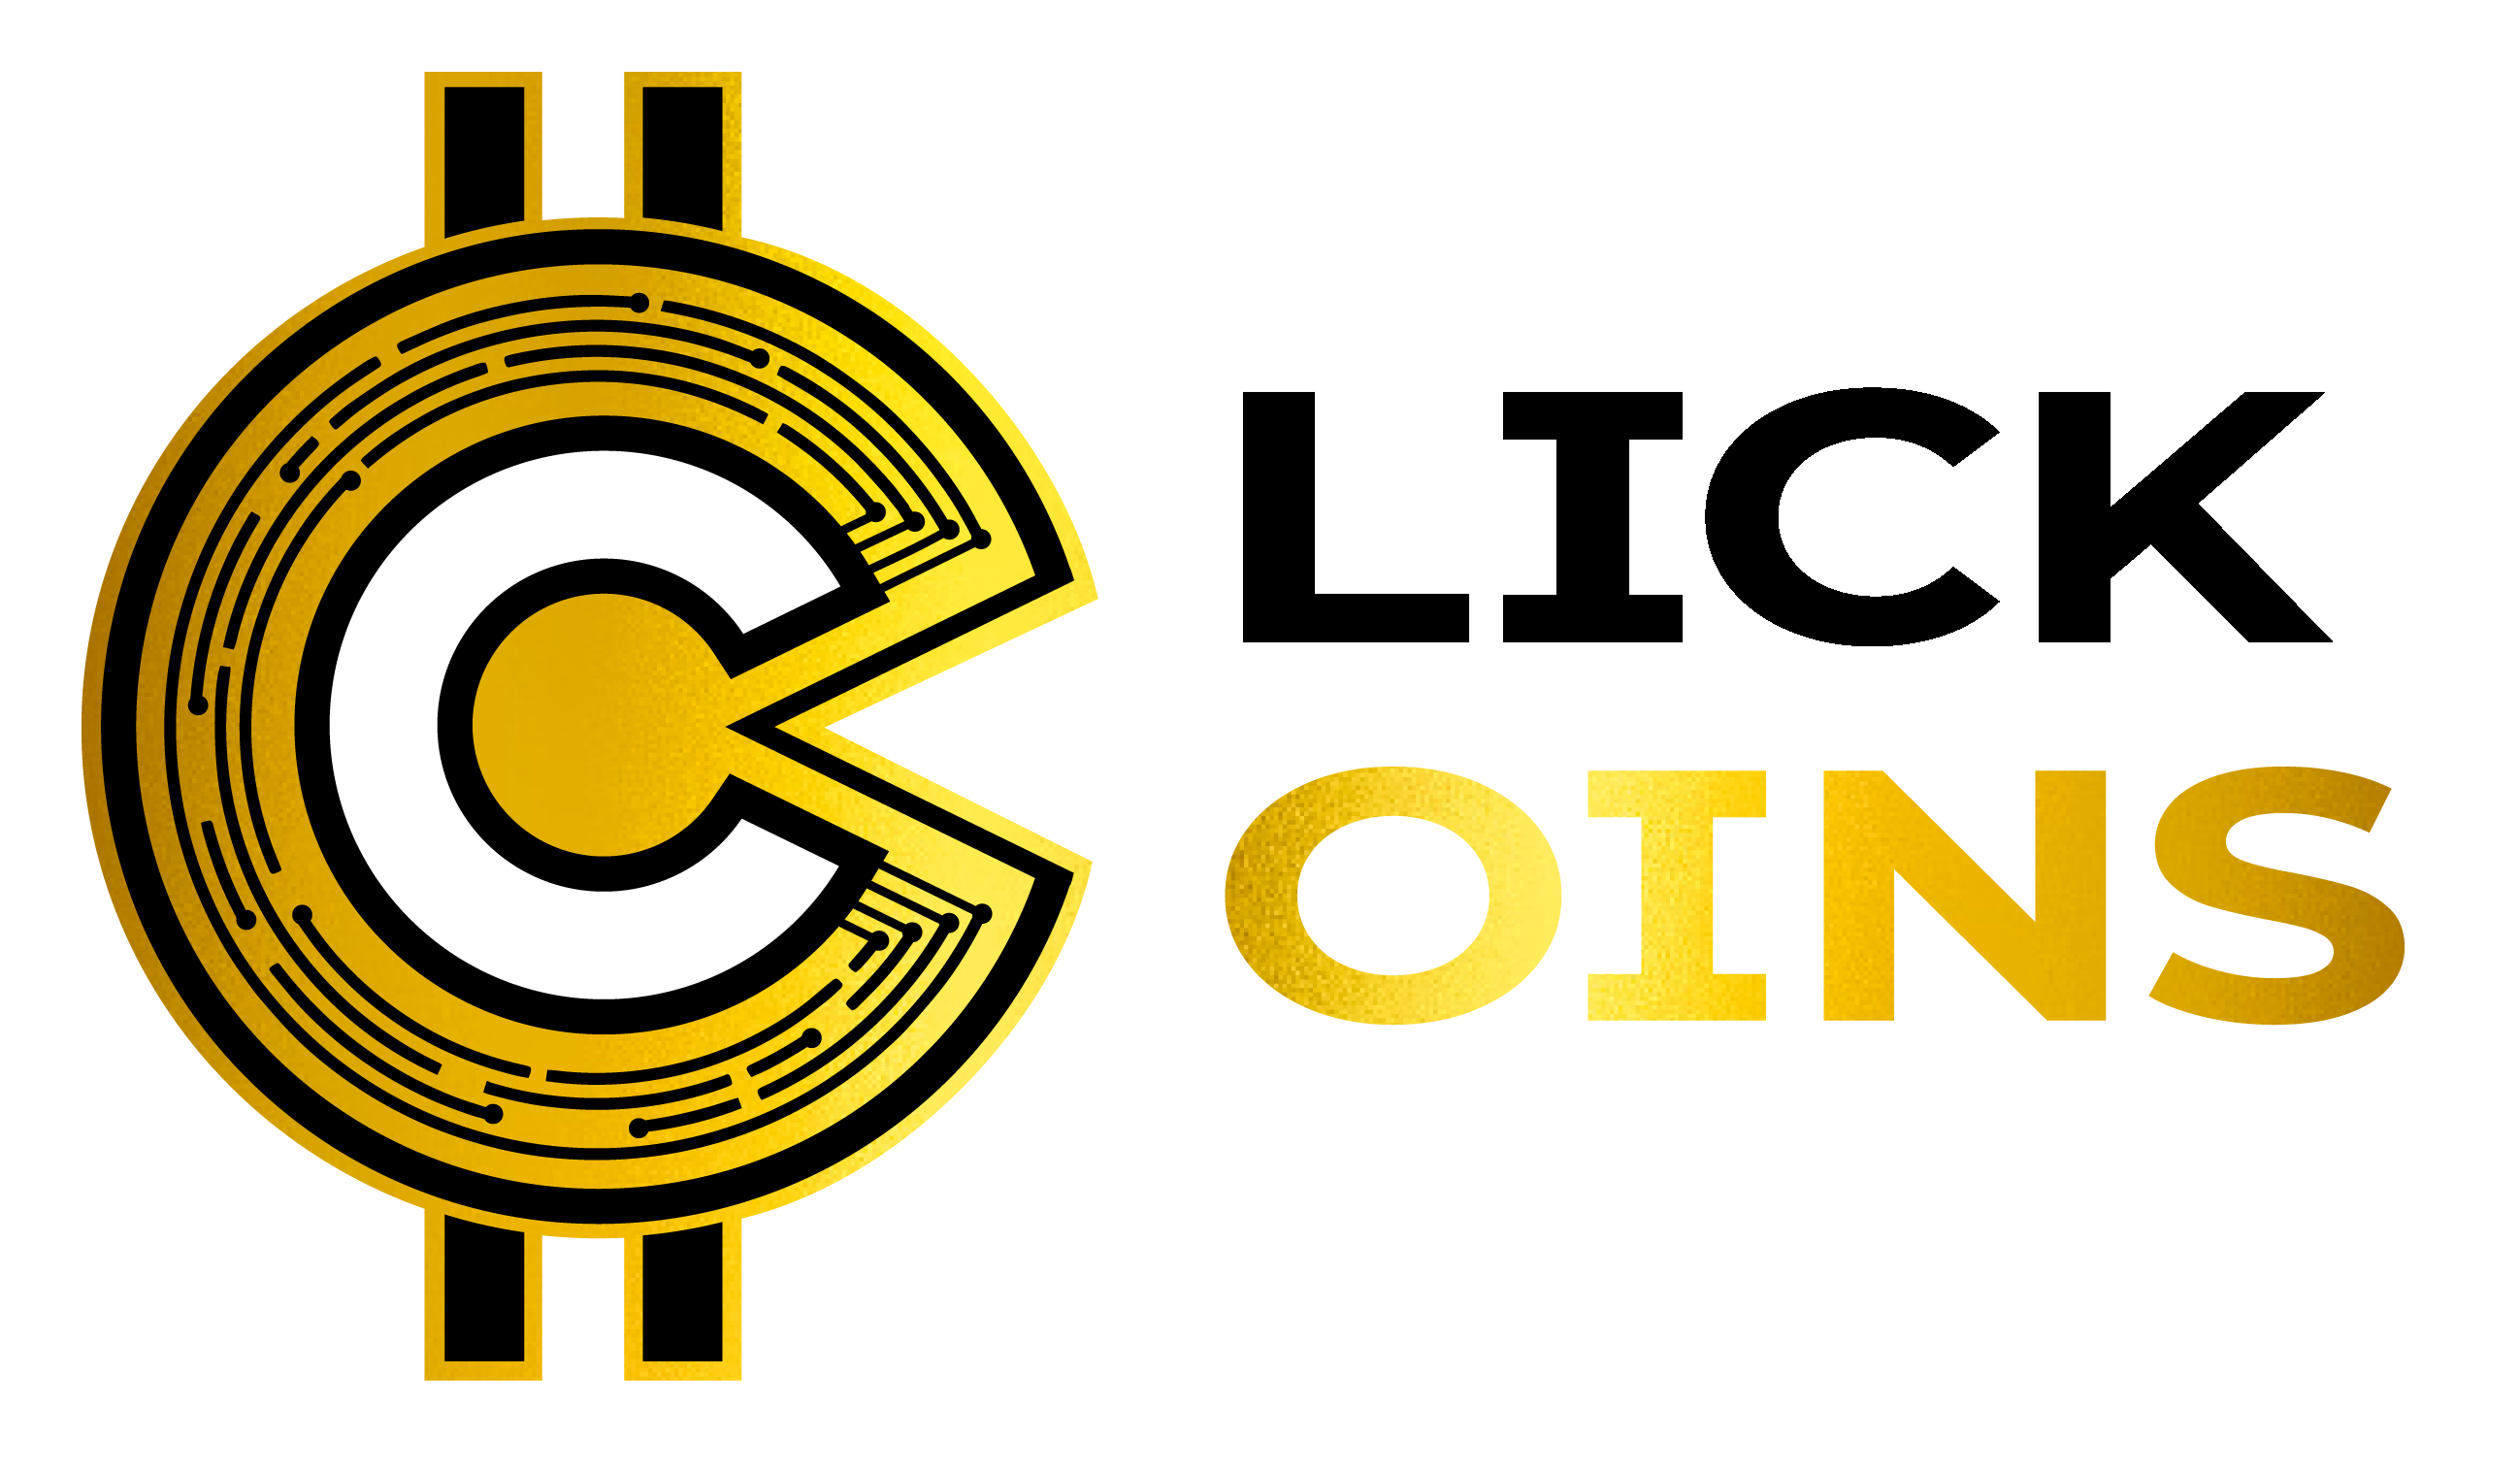 2 clicks coins logo